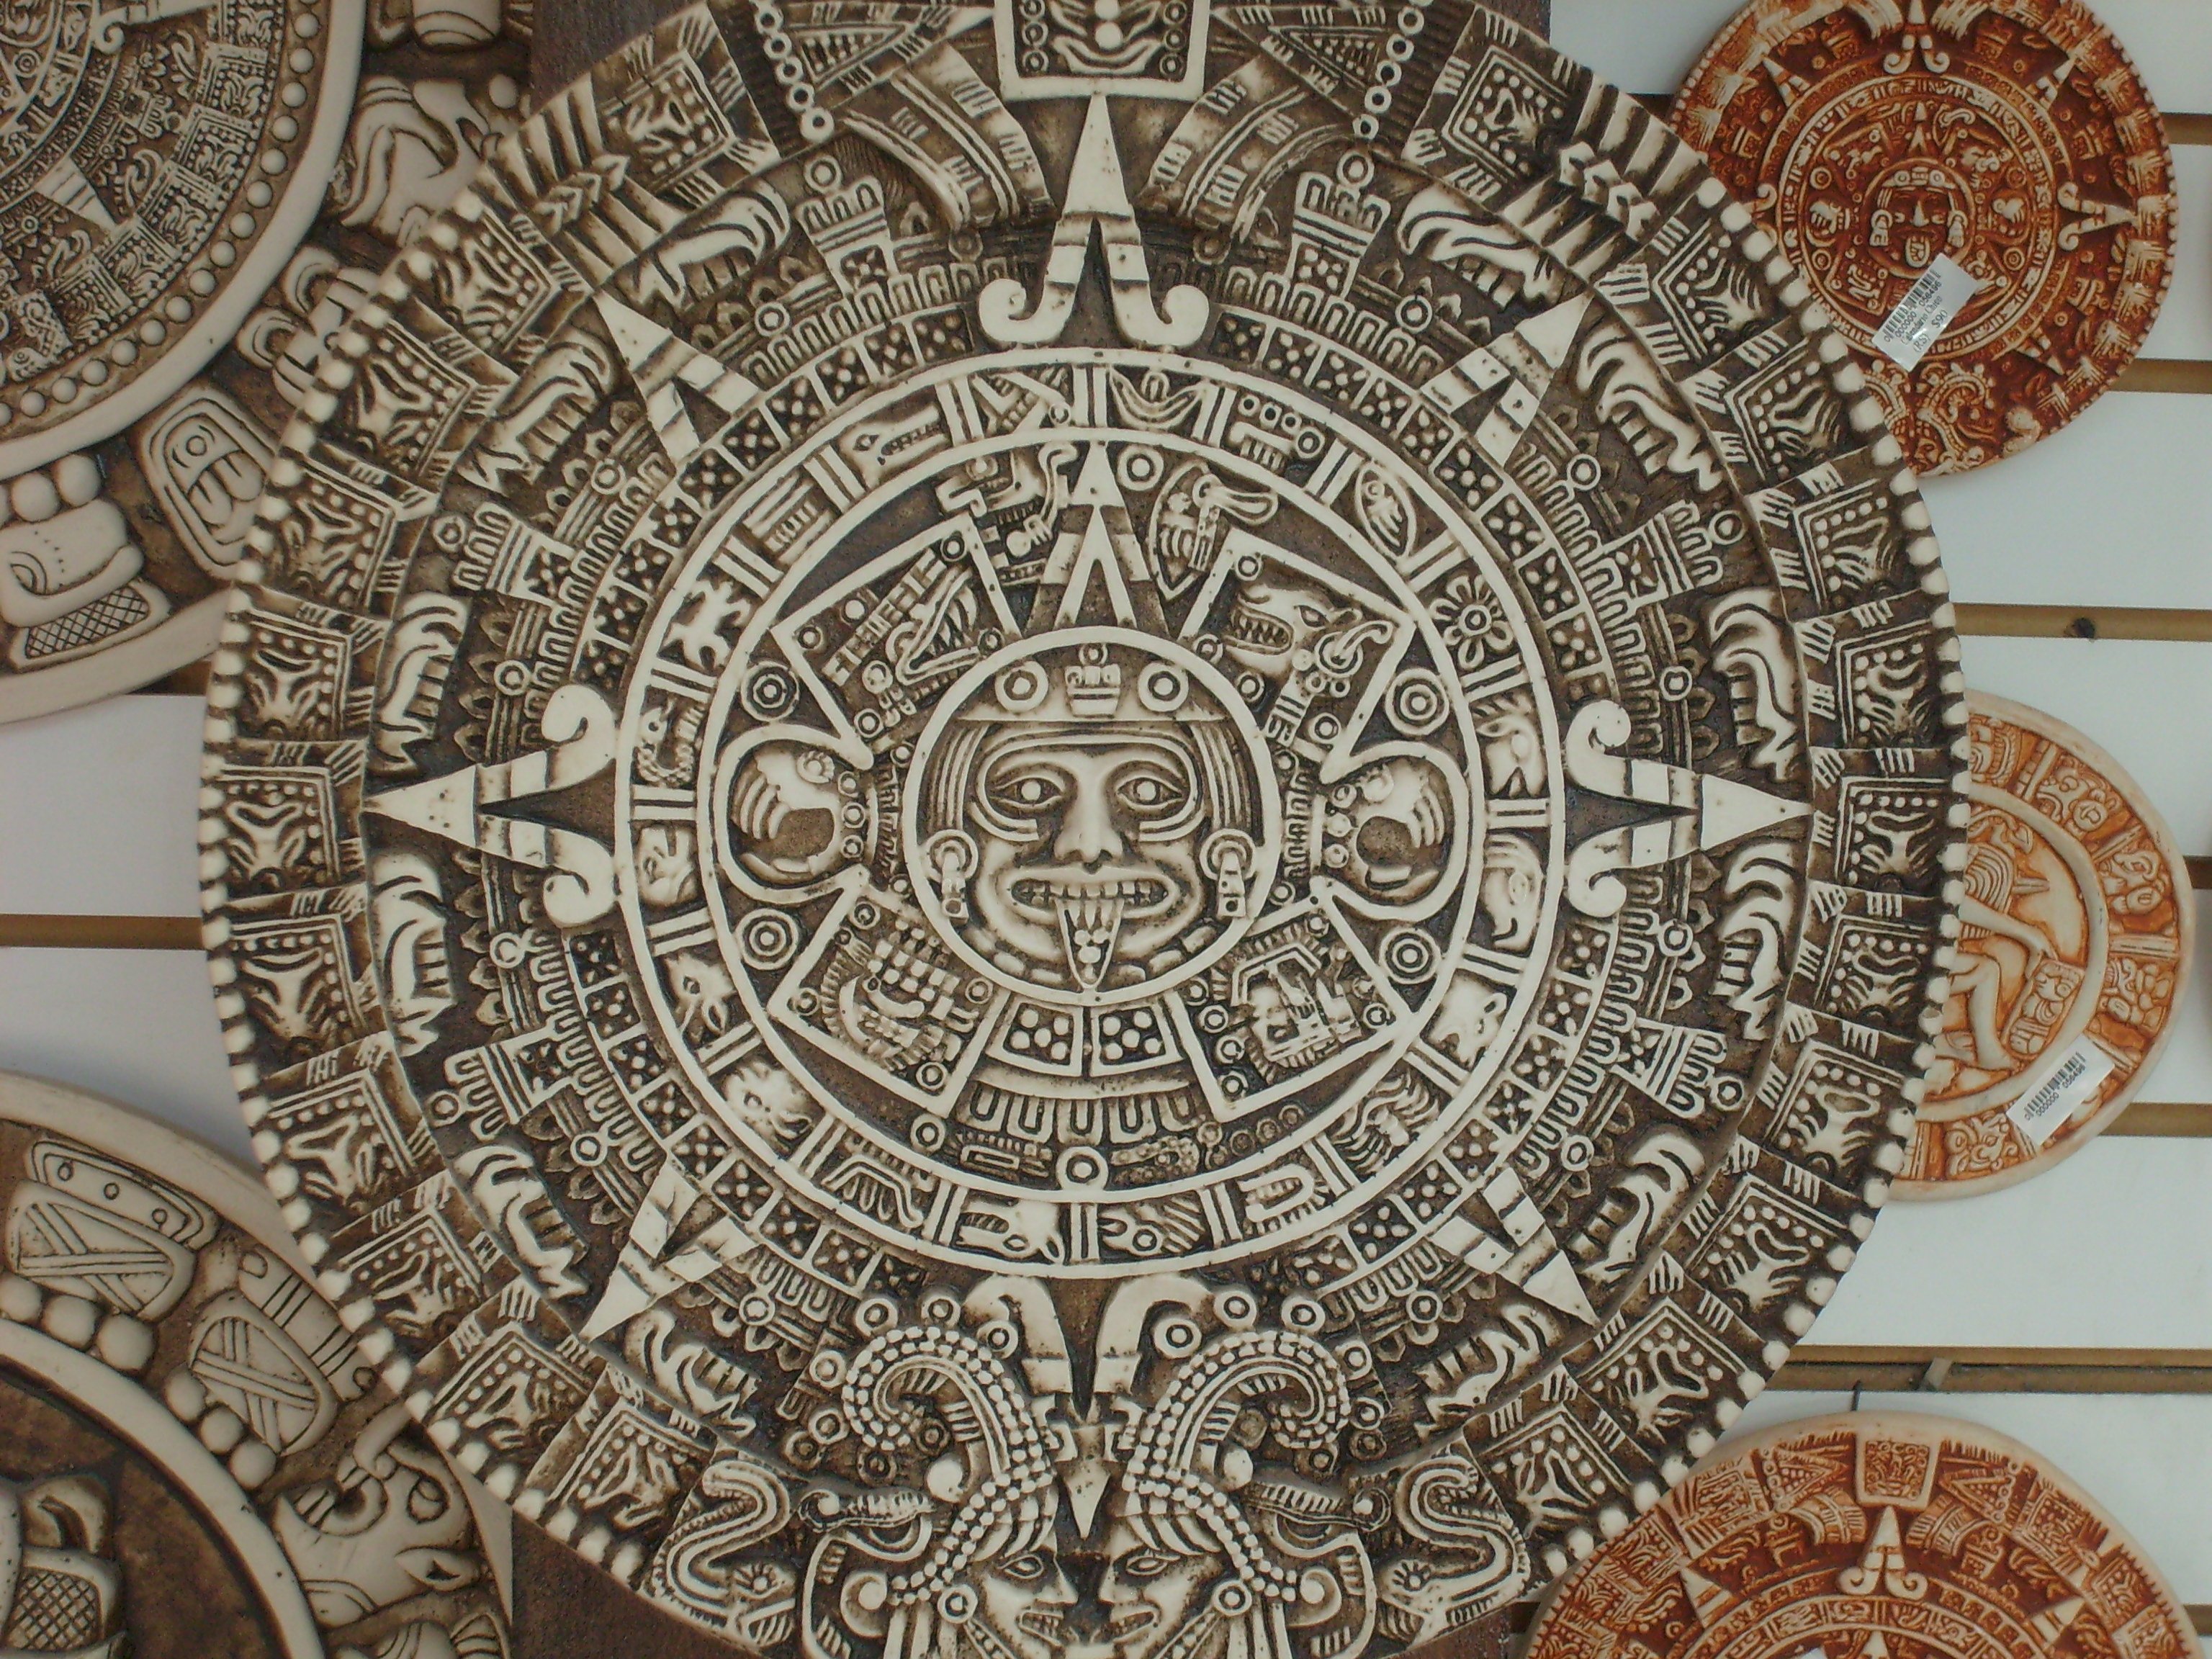 Календарь майя читать 1 глава. Мандала Майя инки Ацтеки. Солнечный календарь Майя. Календарный круг Майя. Ацтекские узоры в высоком разрешении.